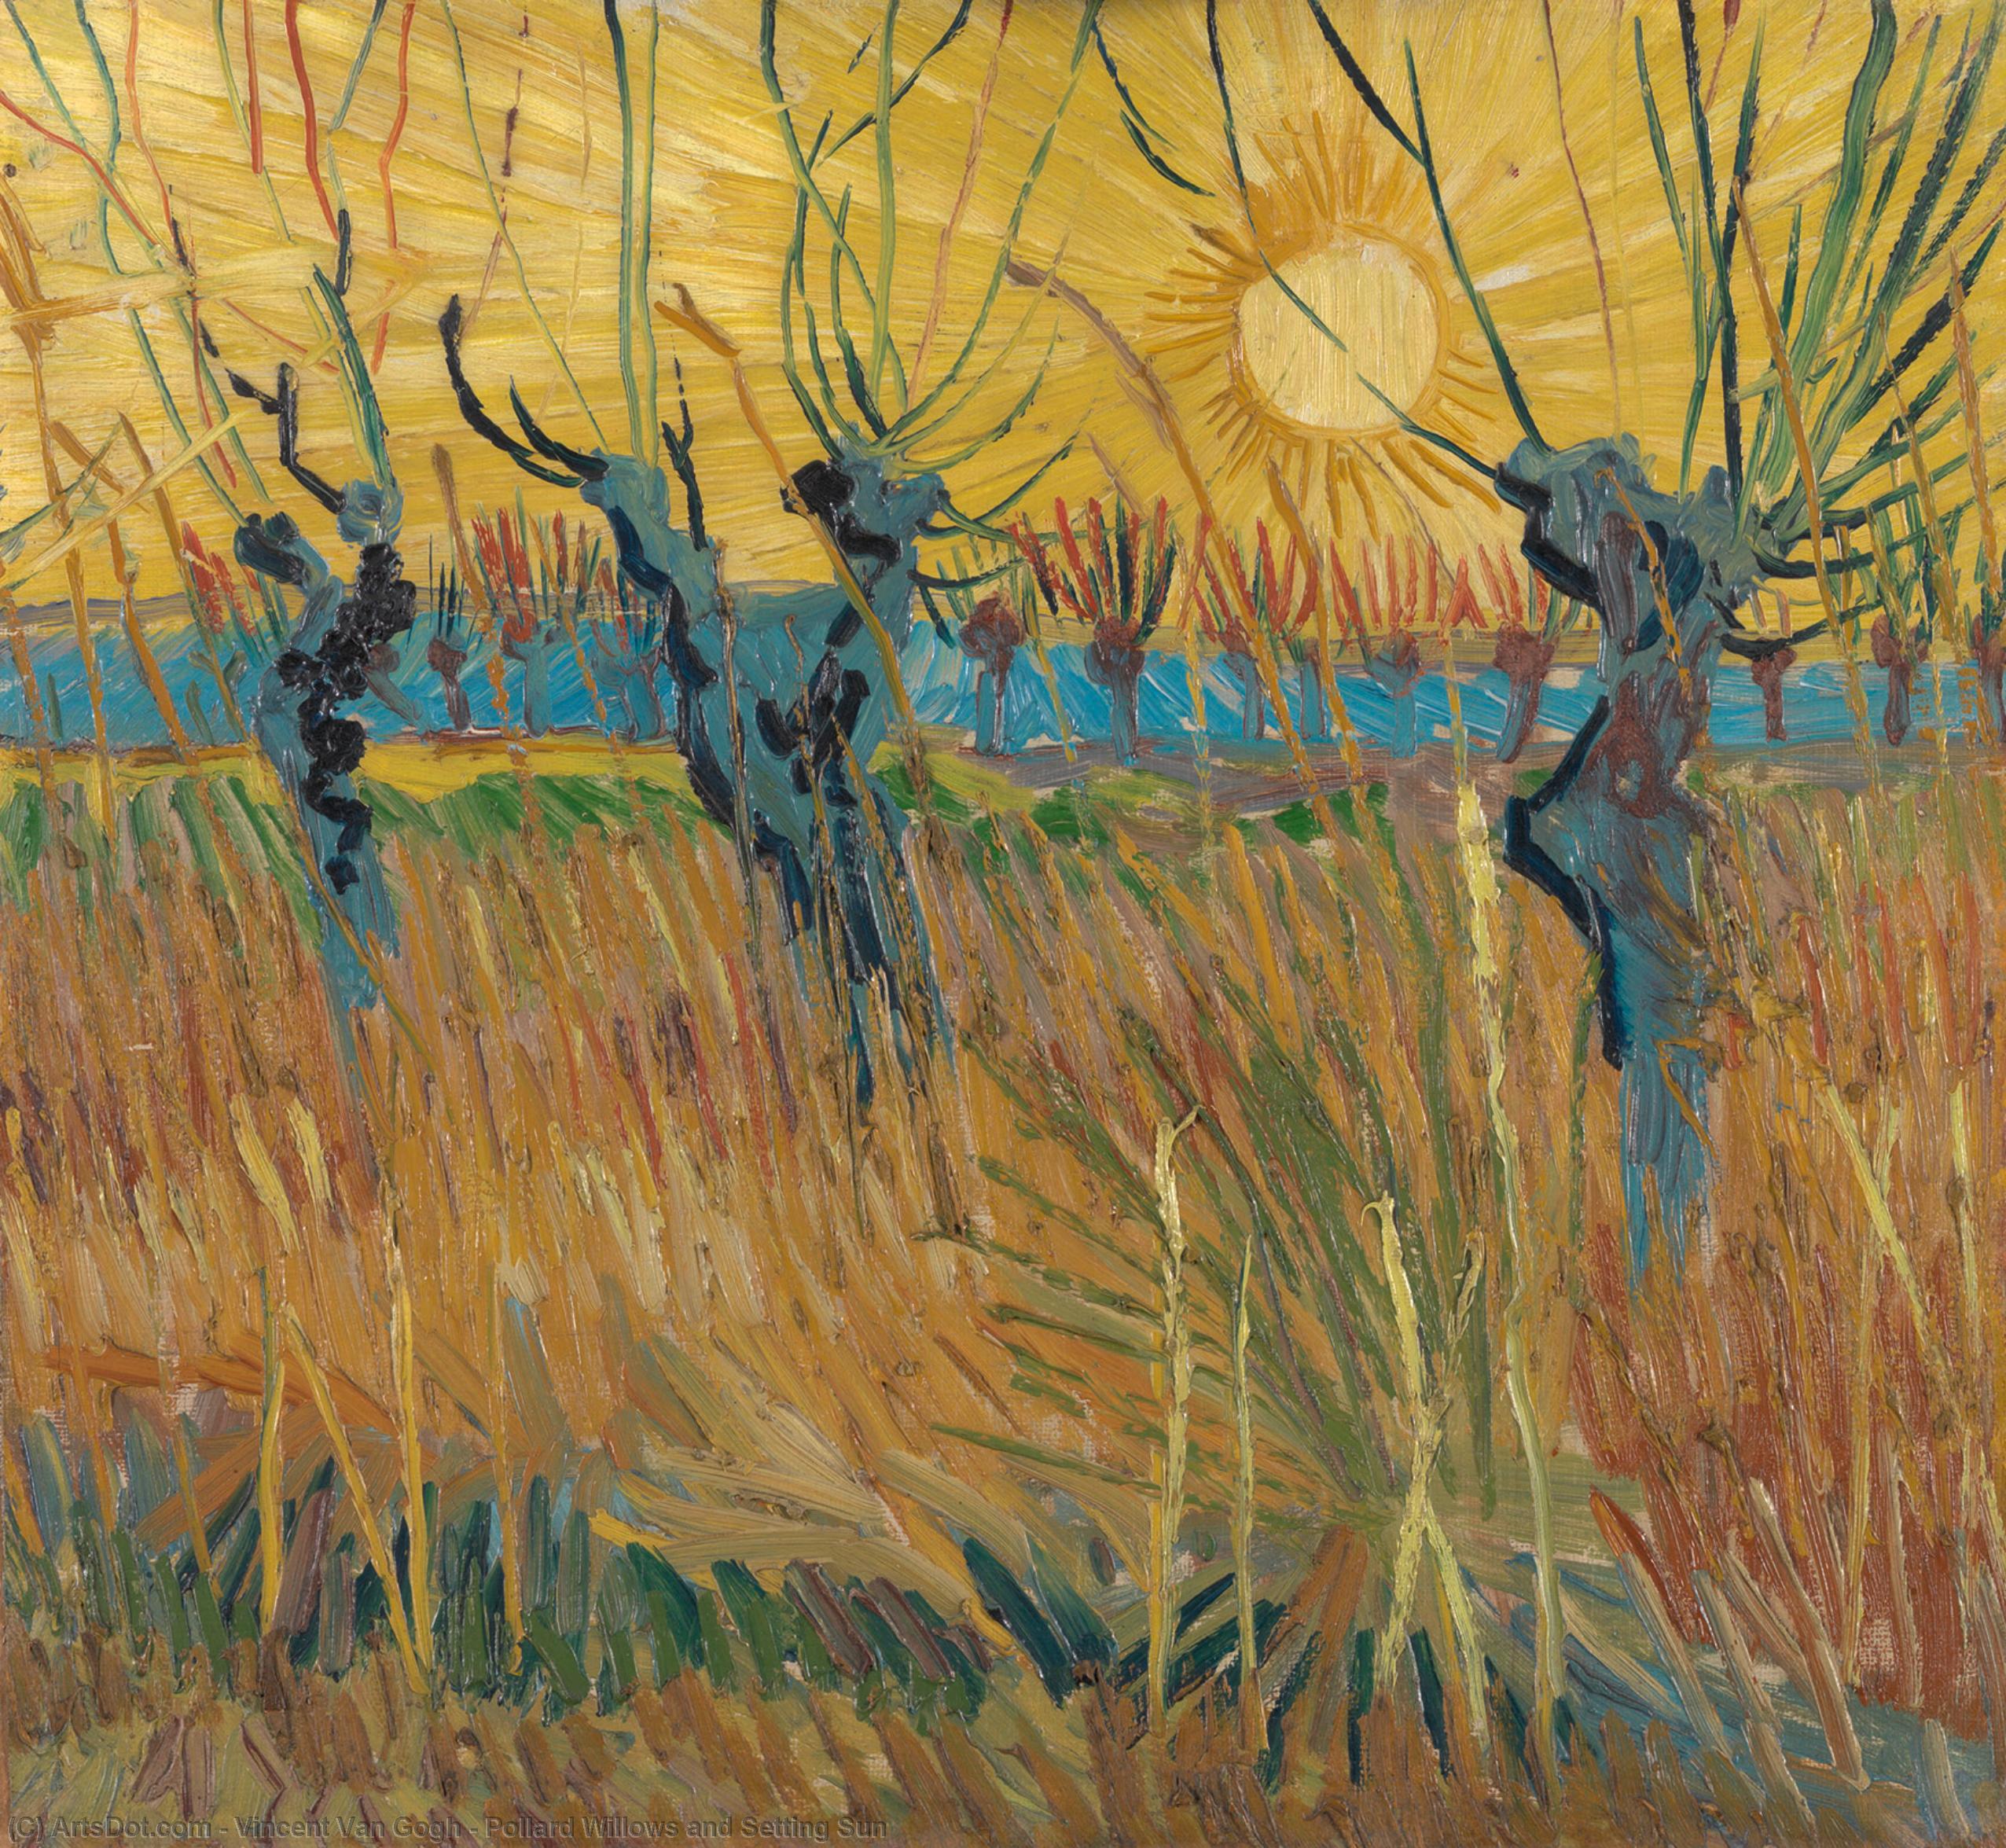 Wikioo.org - Bách khoa toàn thư về mỹ thuật - Vẽ tranh, Tác phẩm nghệ thuật Vincent Van Gogh - Pollard Willows and Setting Sun